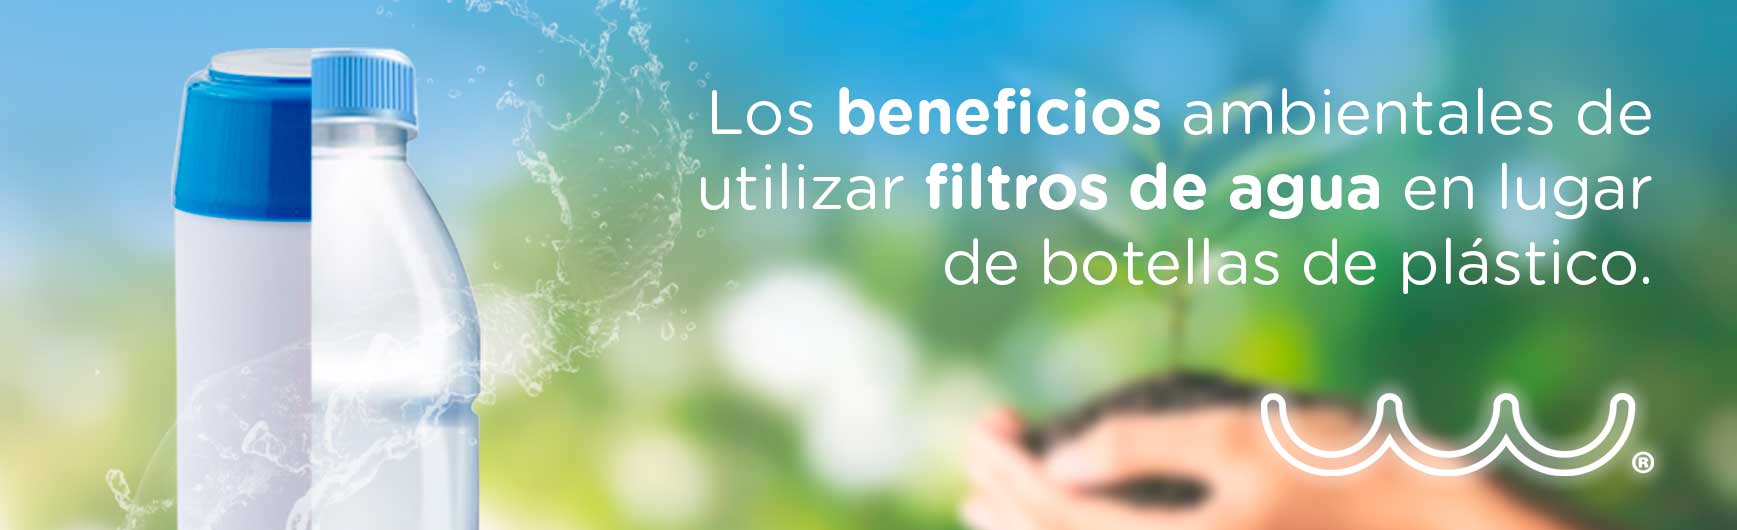 Los beneficios ambientales de utilizar filtros de agua en lugar de botellas de plástico.